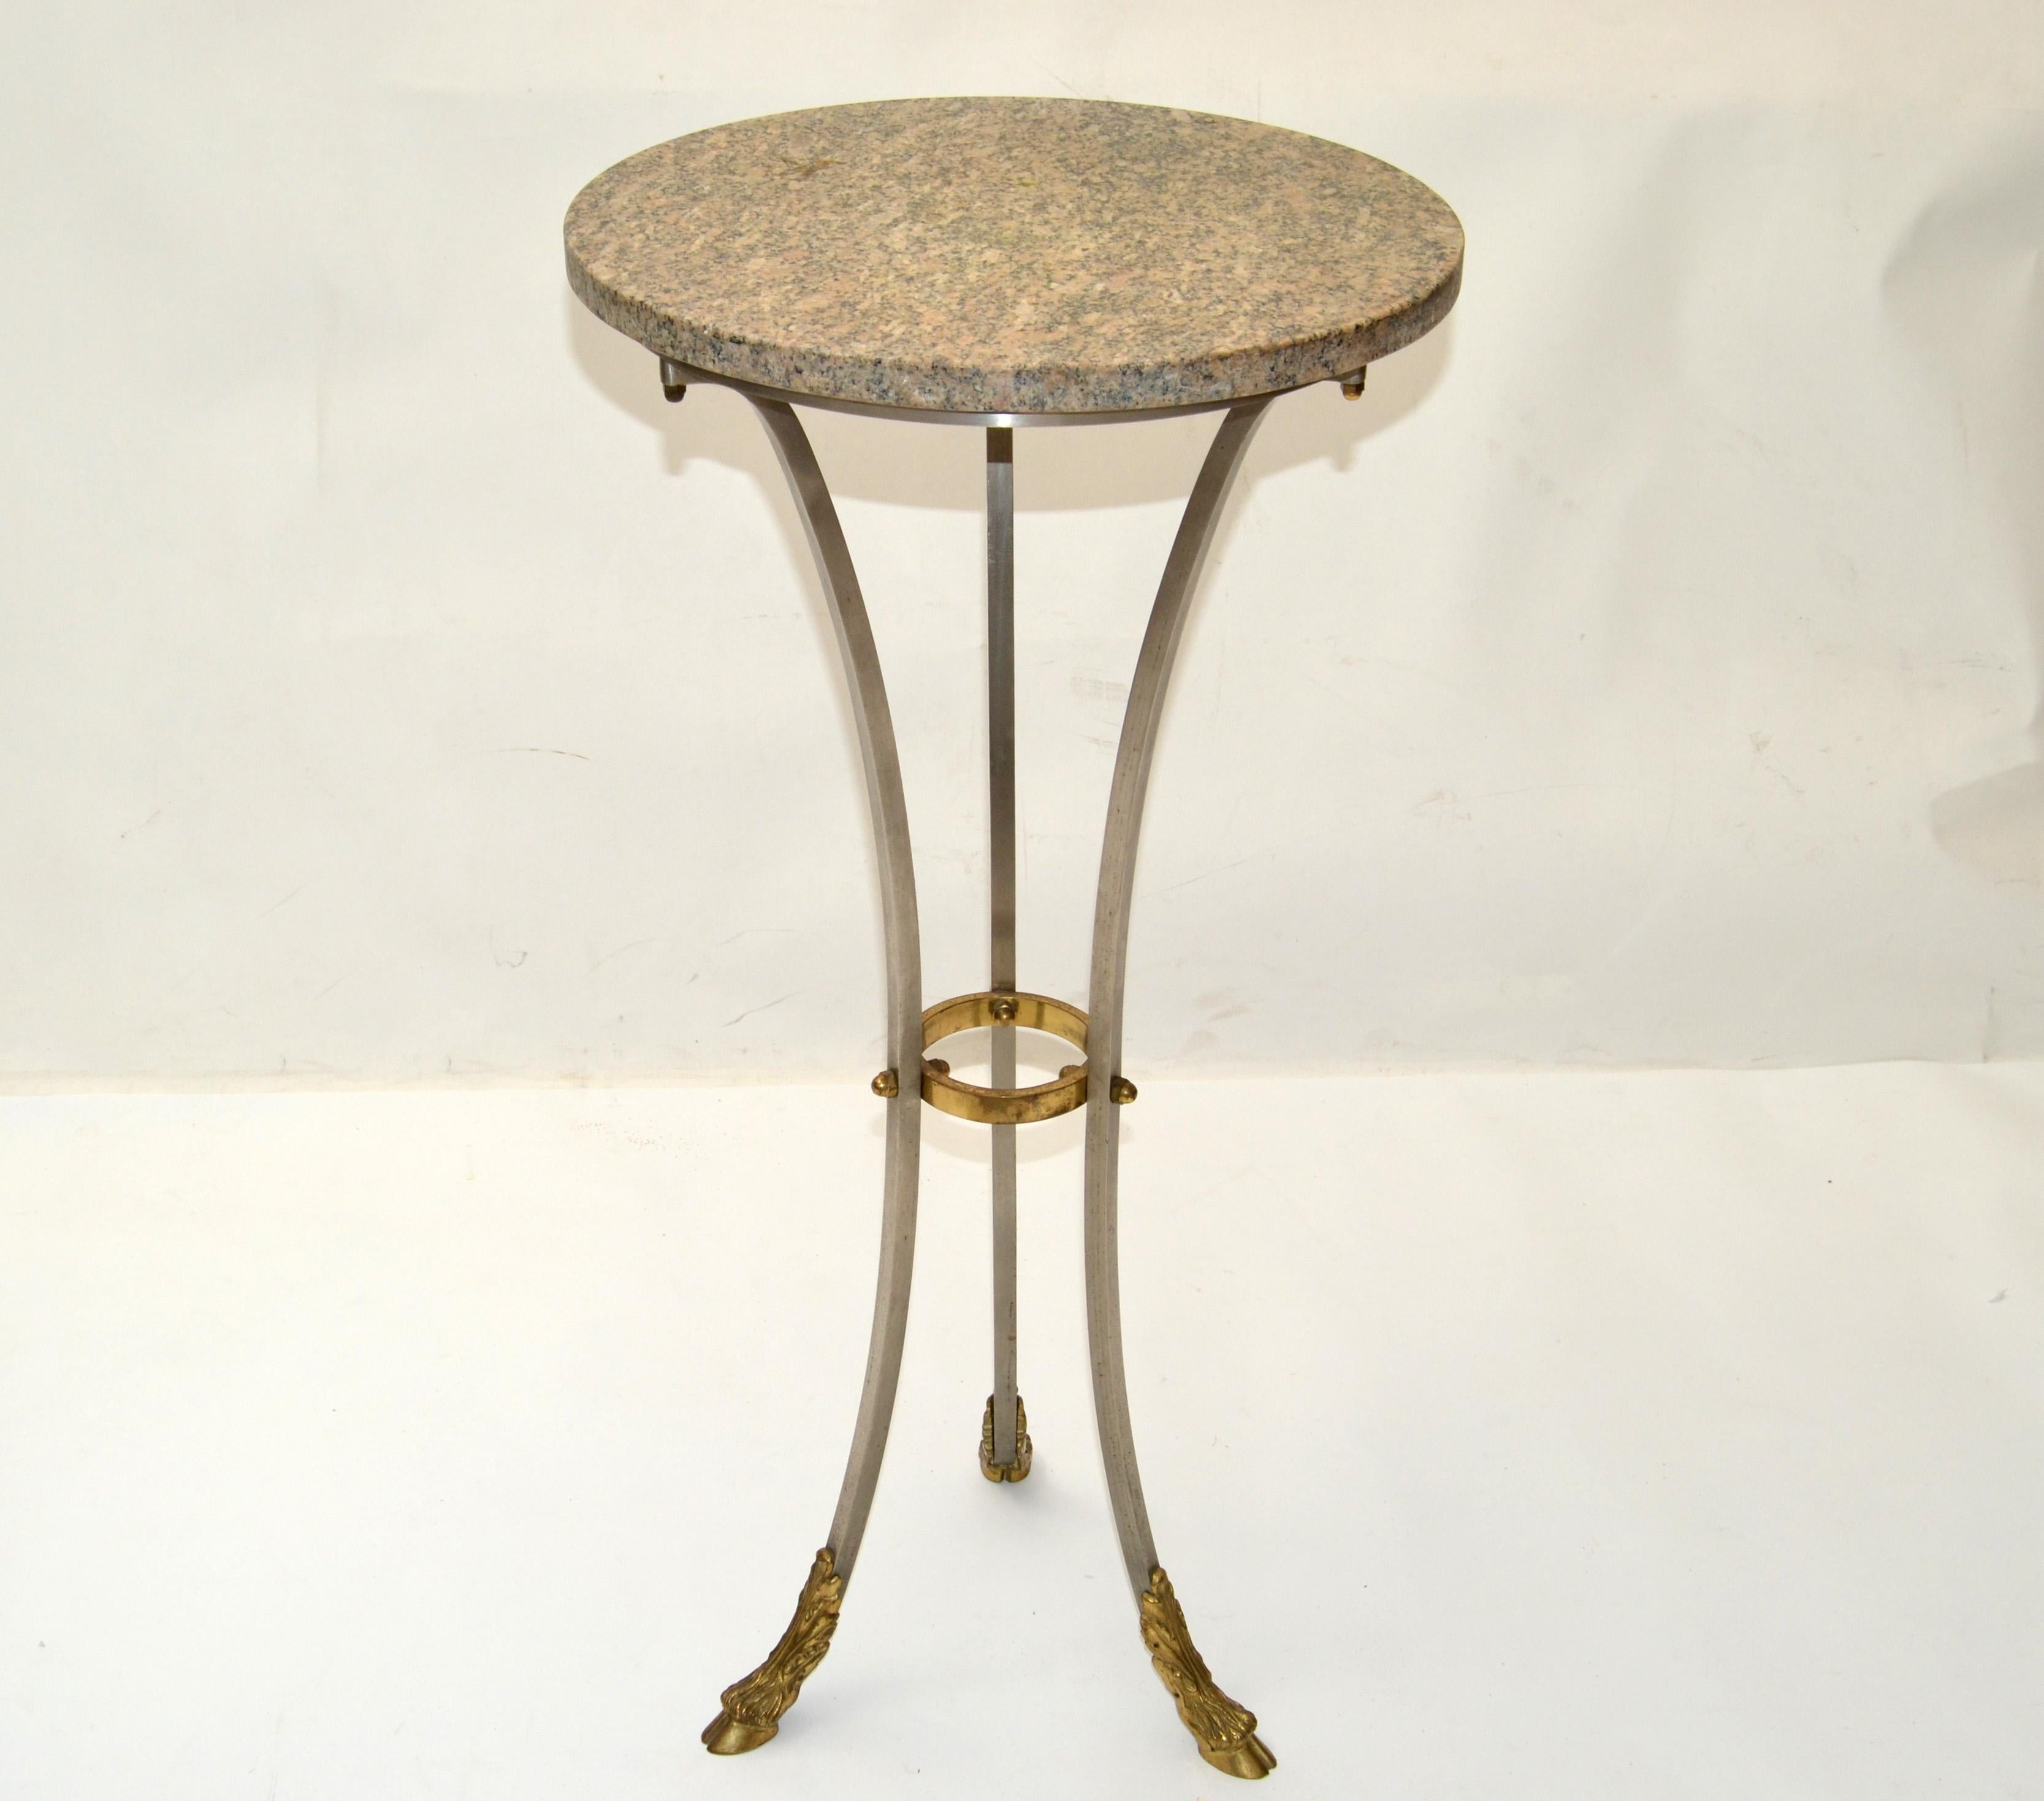 Neoklassische Französisch Drink Tisch Maison Jansen Stil Stahl, Messing und Bronze Huf Füße mit einem runden Sand Farbe Travertin oben.
Die natürliche taupe Farbe 1-Zoll-dicken Stone Top gibt einen schönen Kontrast zu den silbernen Farbton und